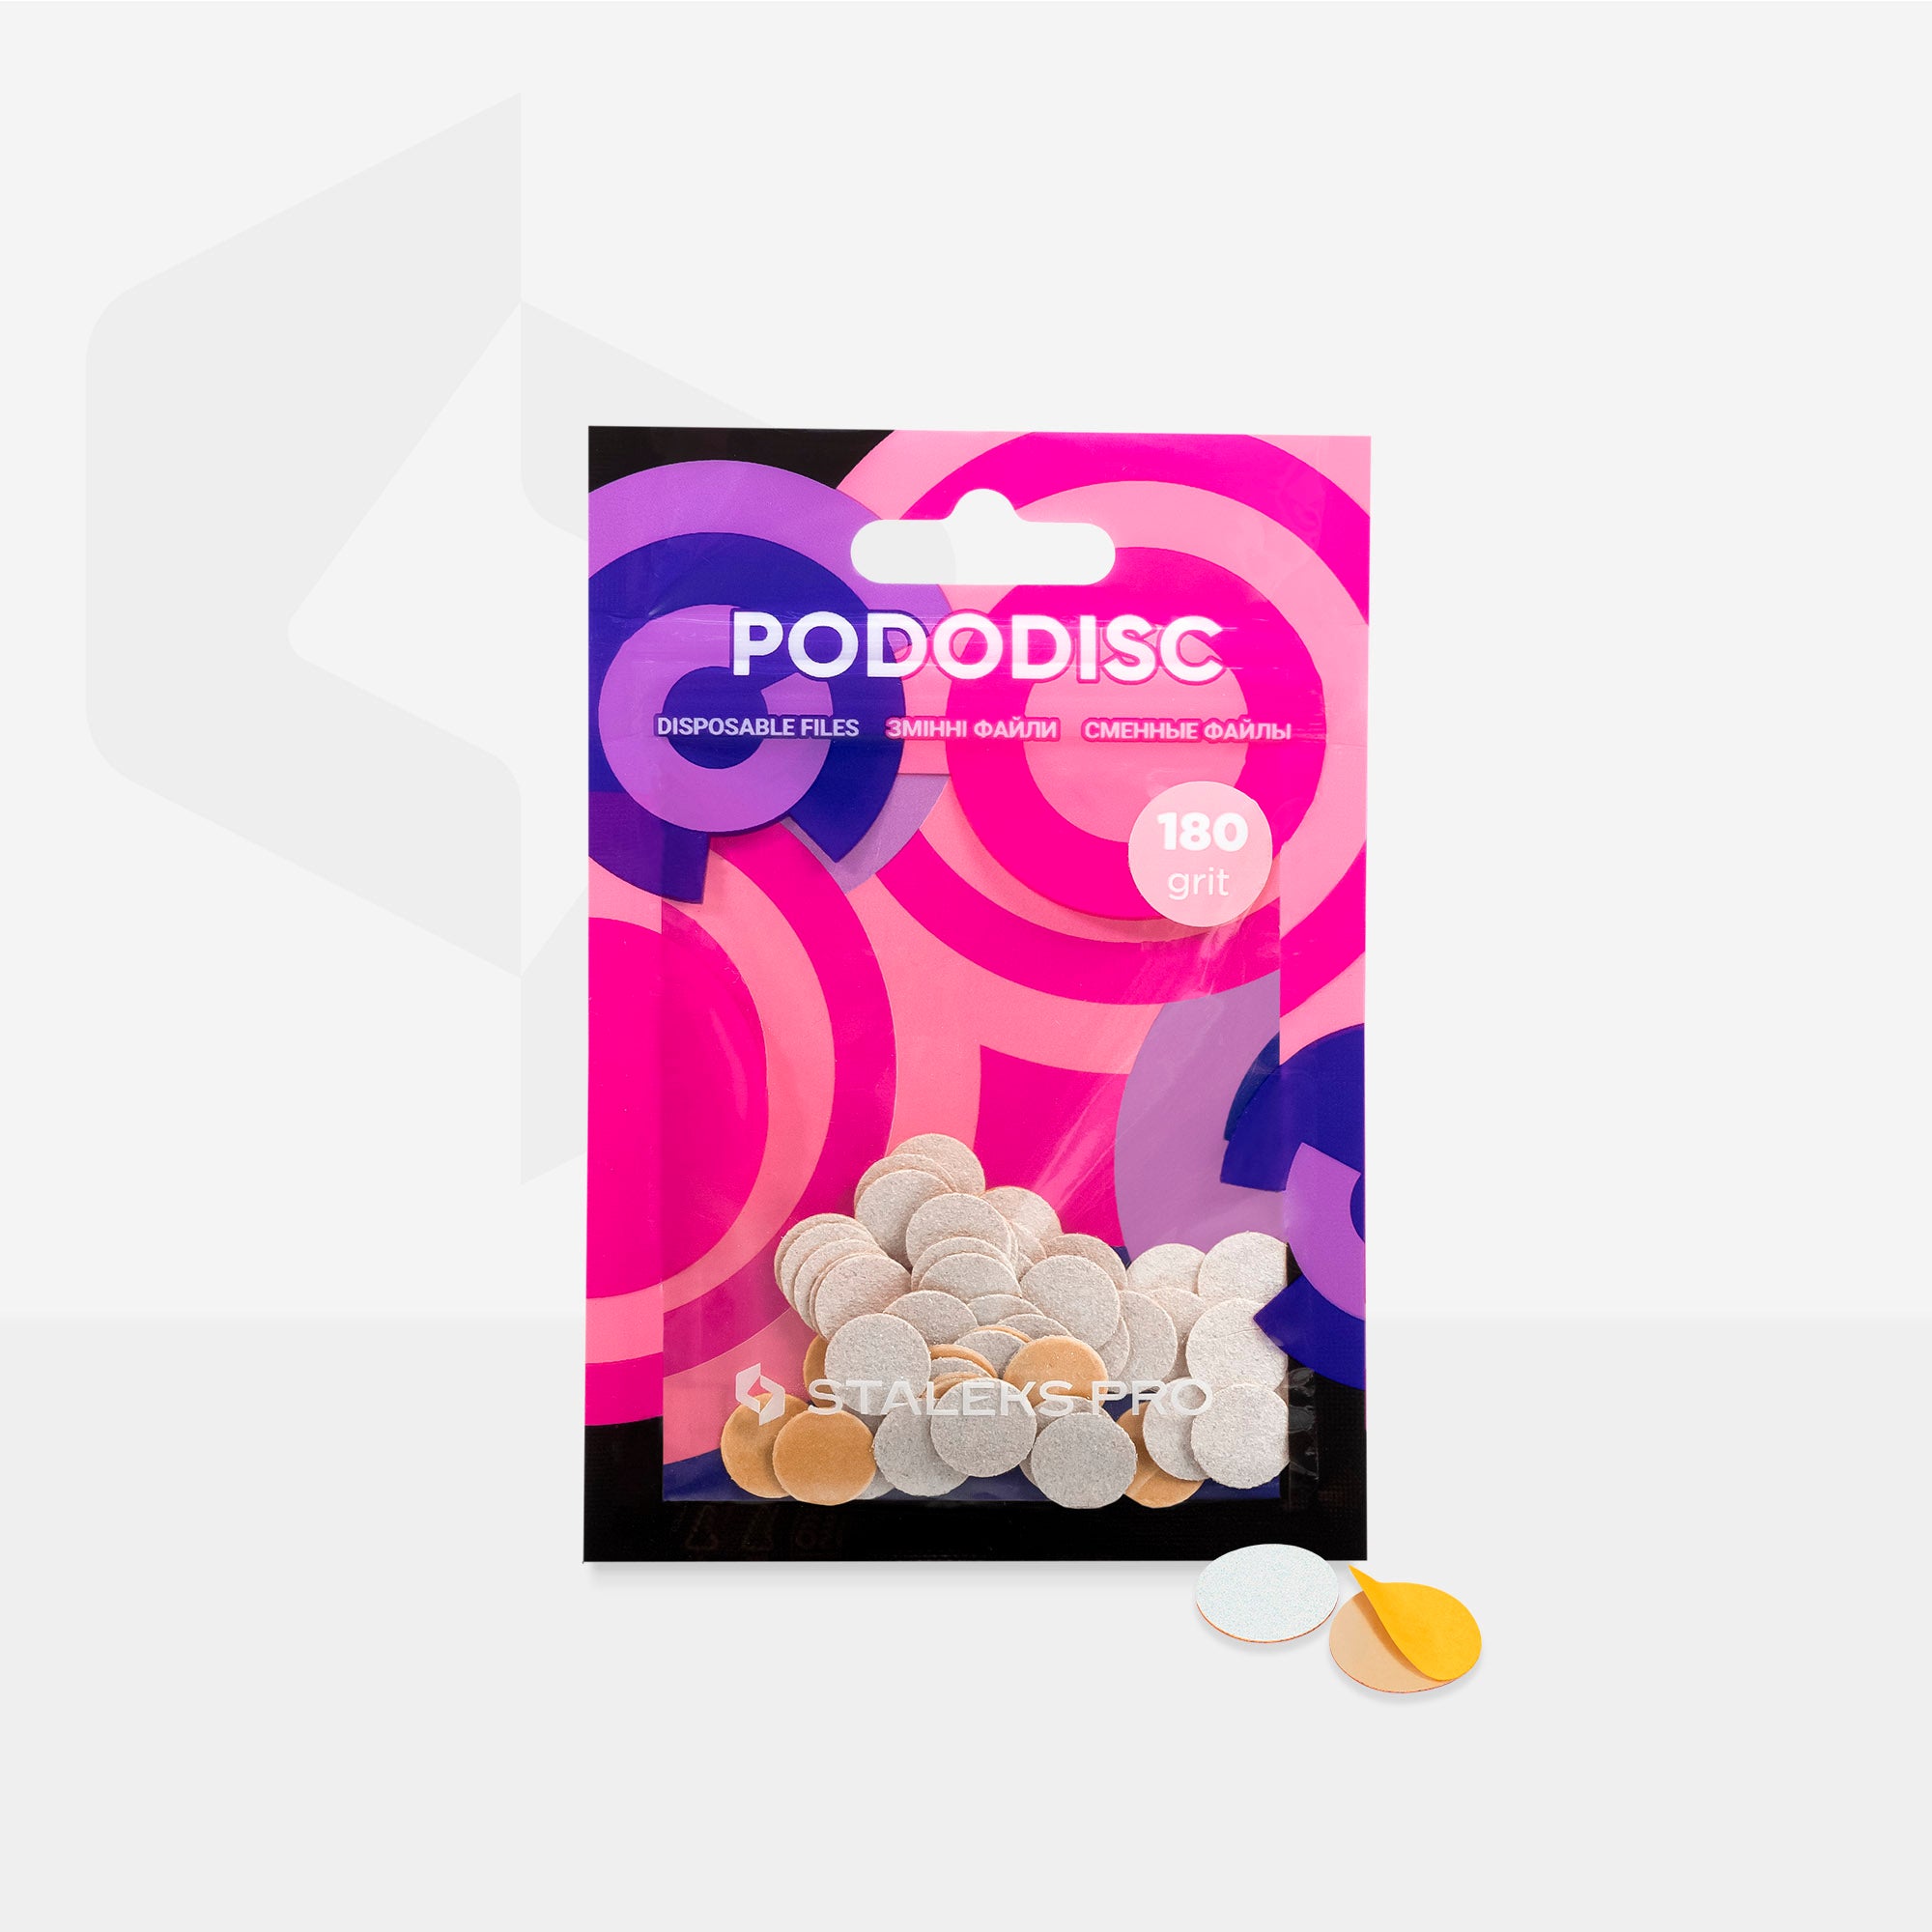 Embouts interchangeables pour disque pédicure PODODISC STALEKS PRO XS (50 pcs)